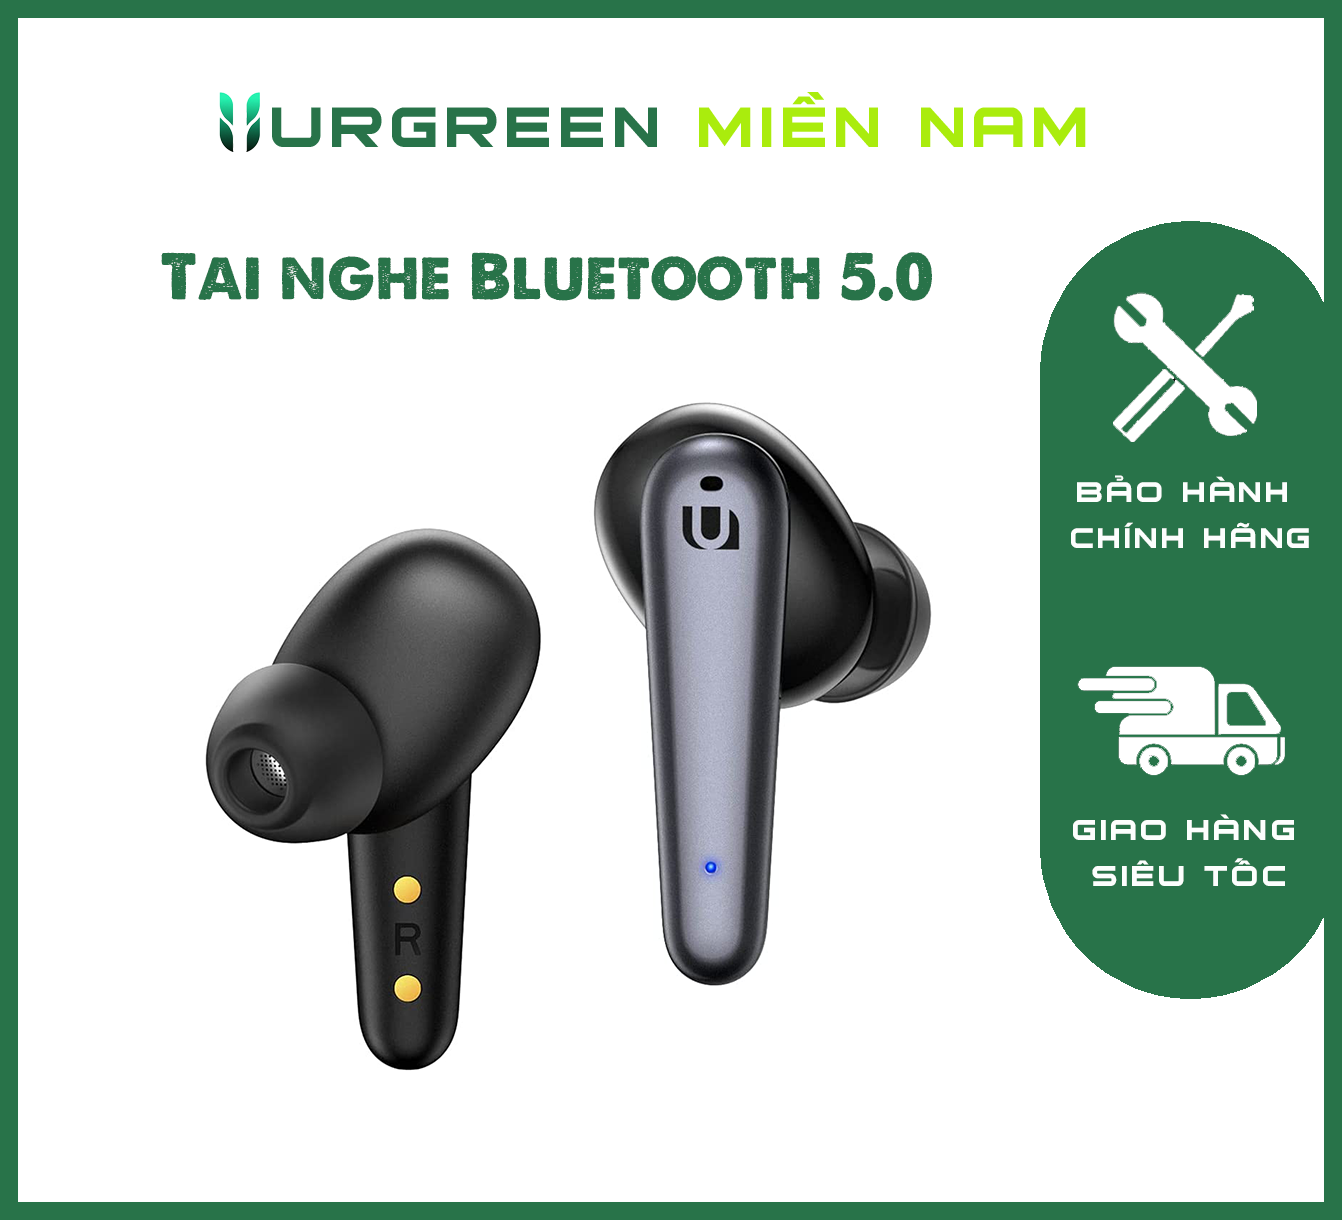 Tai nghe Bluetooth 5.0 UGREEN WS111 - Âm thanh Hifi True Wireless - Sạc nhanh 1.5 giờ, thời gian sử dụng lên đến 24 giờ – Ugreen Việt Nam